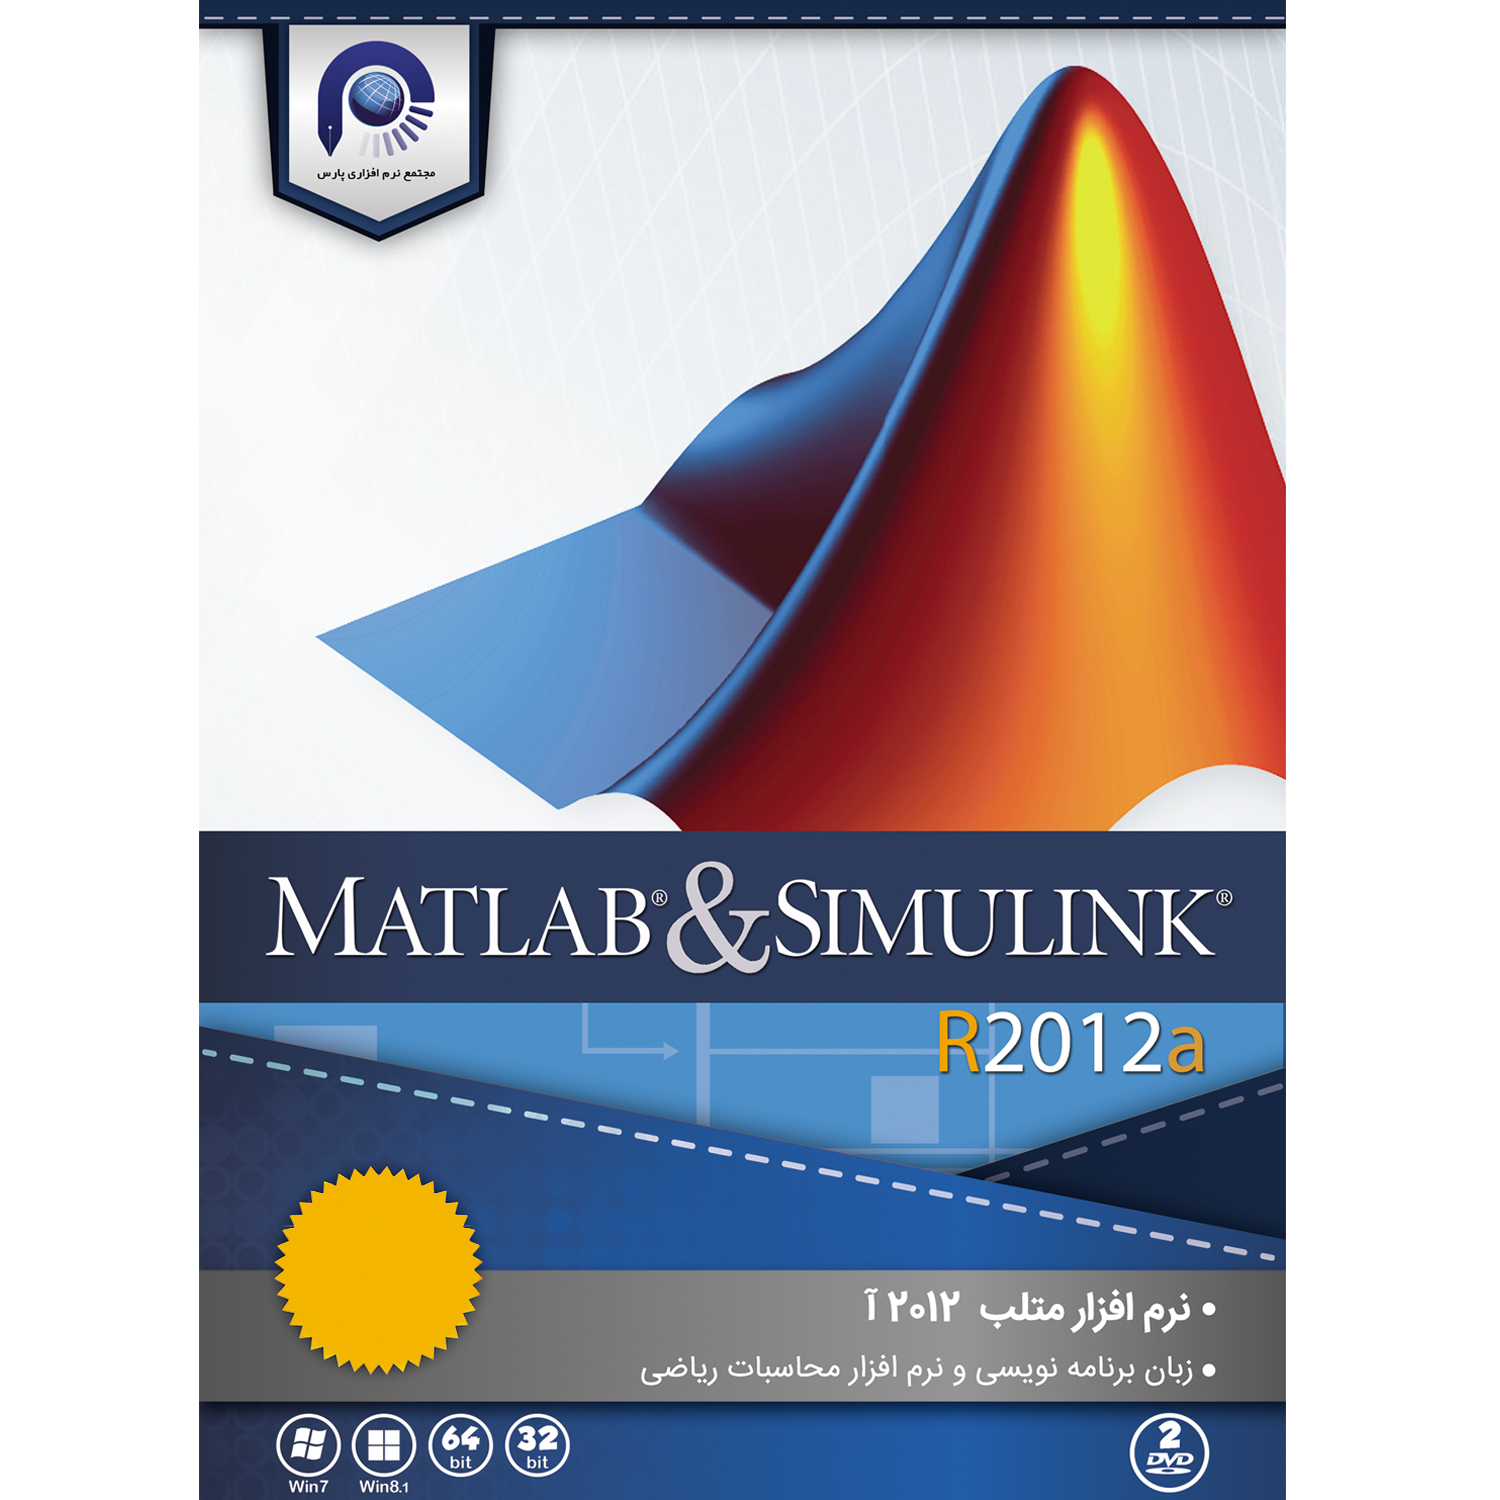  مجموعه نرم افزاری MATLAB & SIMULINK  R2012a  نشر مجتمع نرم افزاری پارس